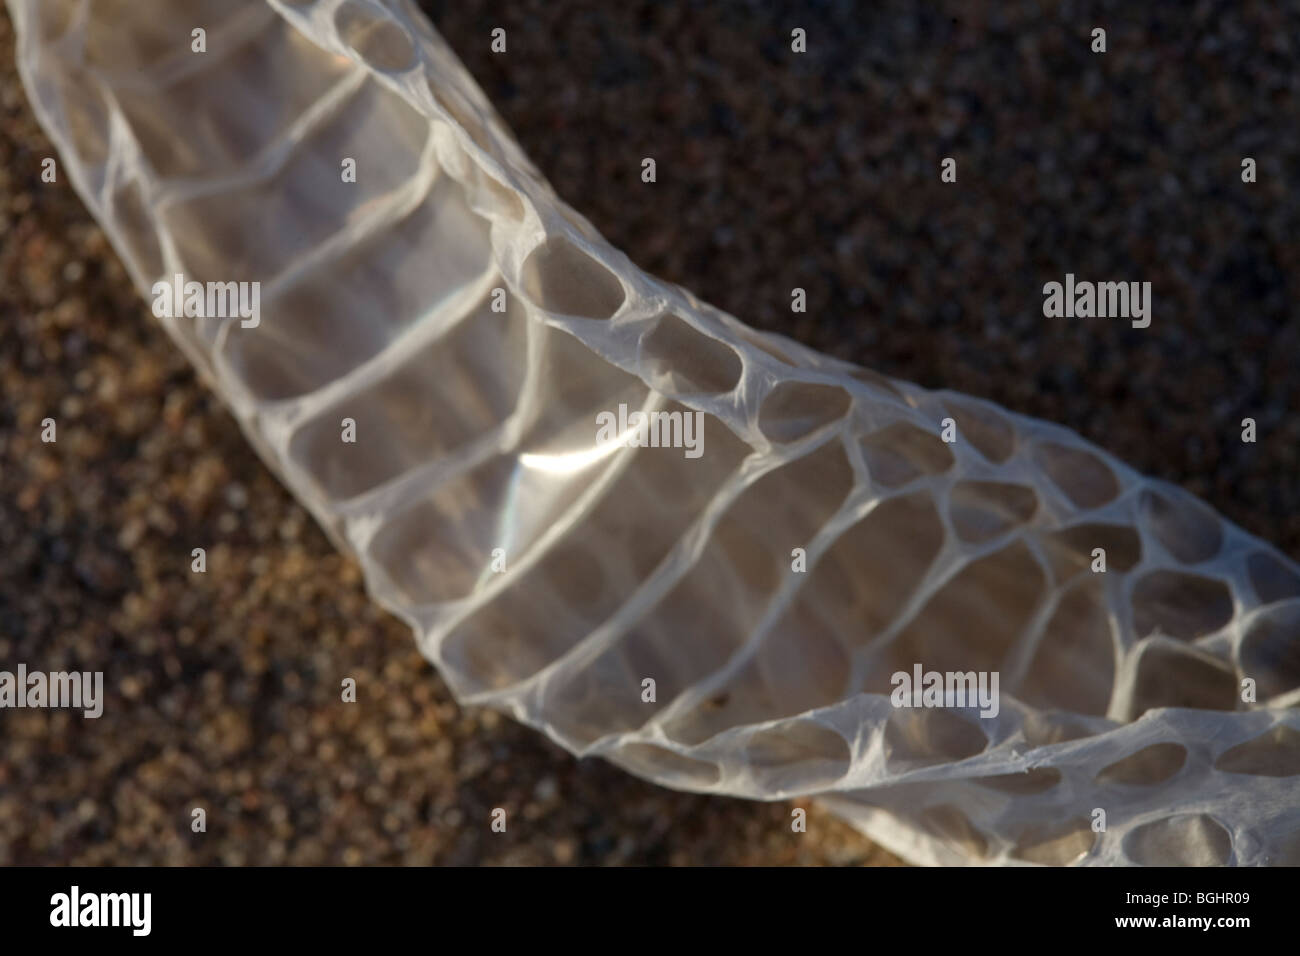 Freshly  shed snake skin found on the sand in Egypt's Eastern Desert. Stock Photo